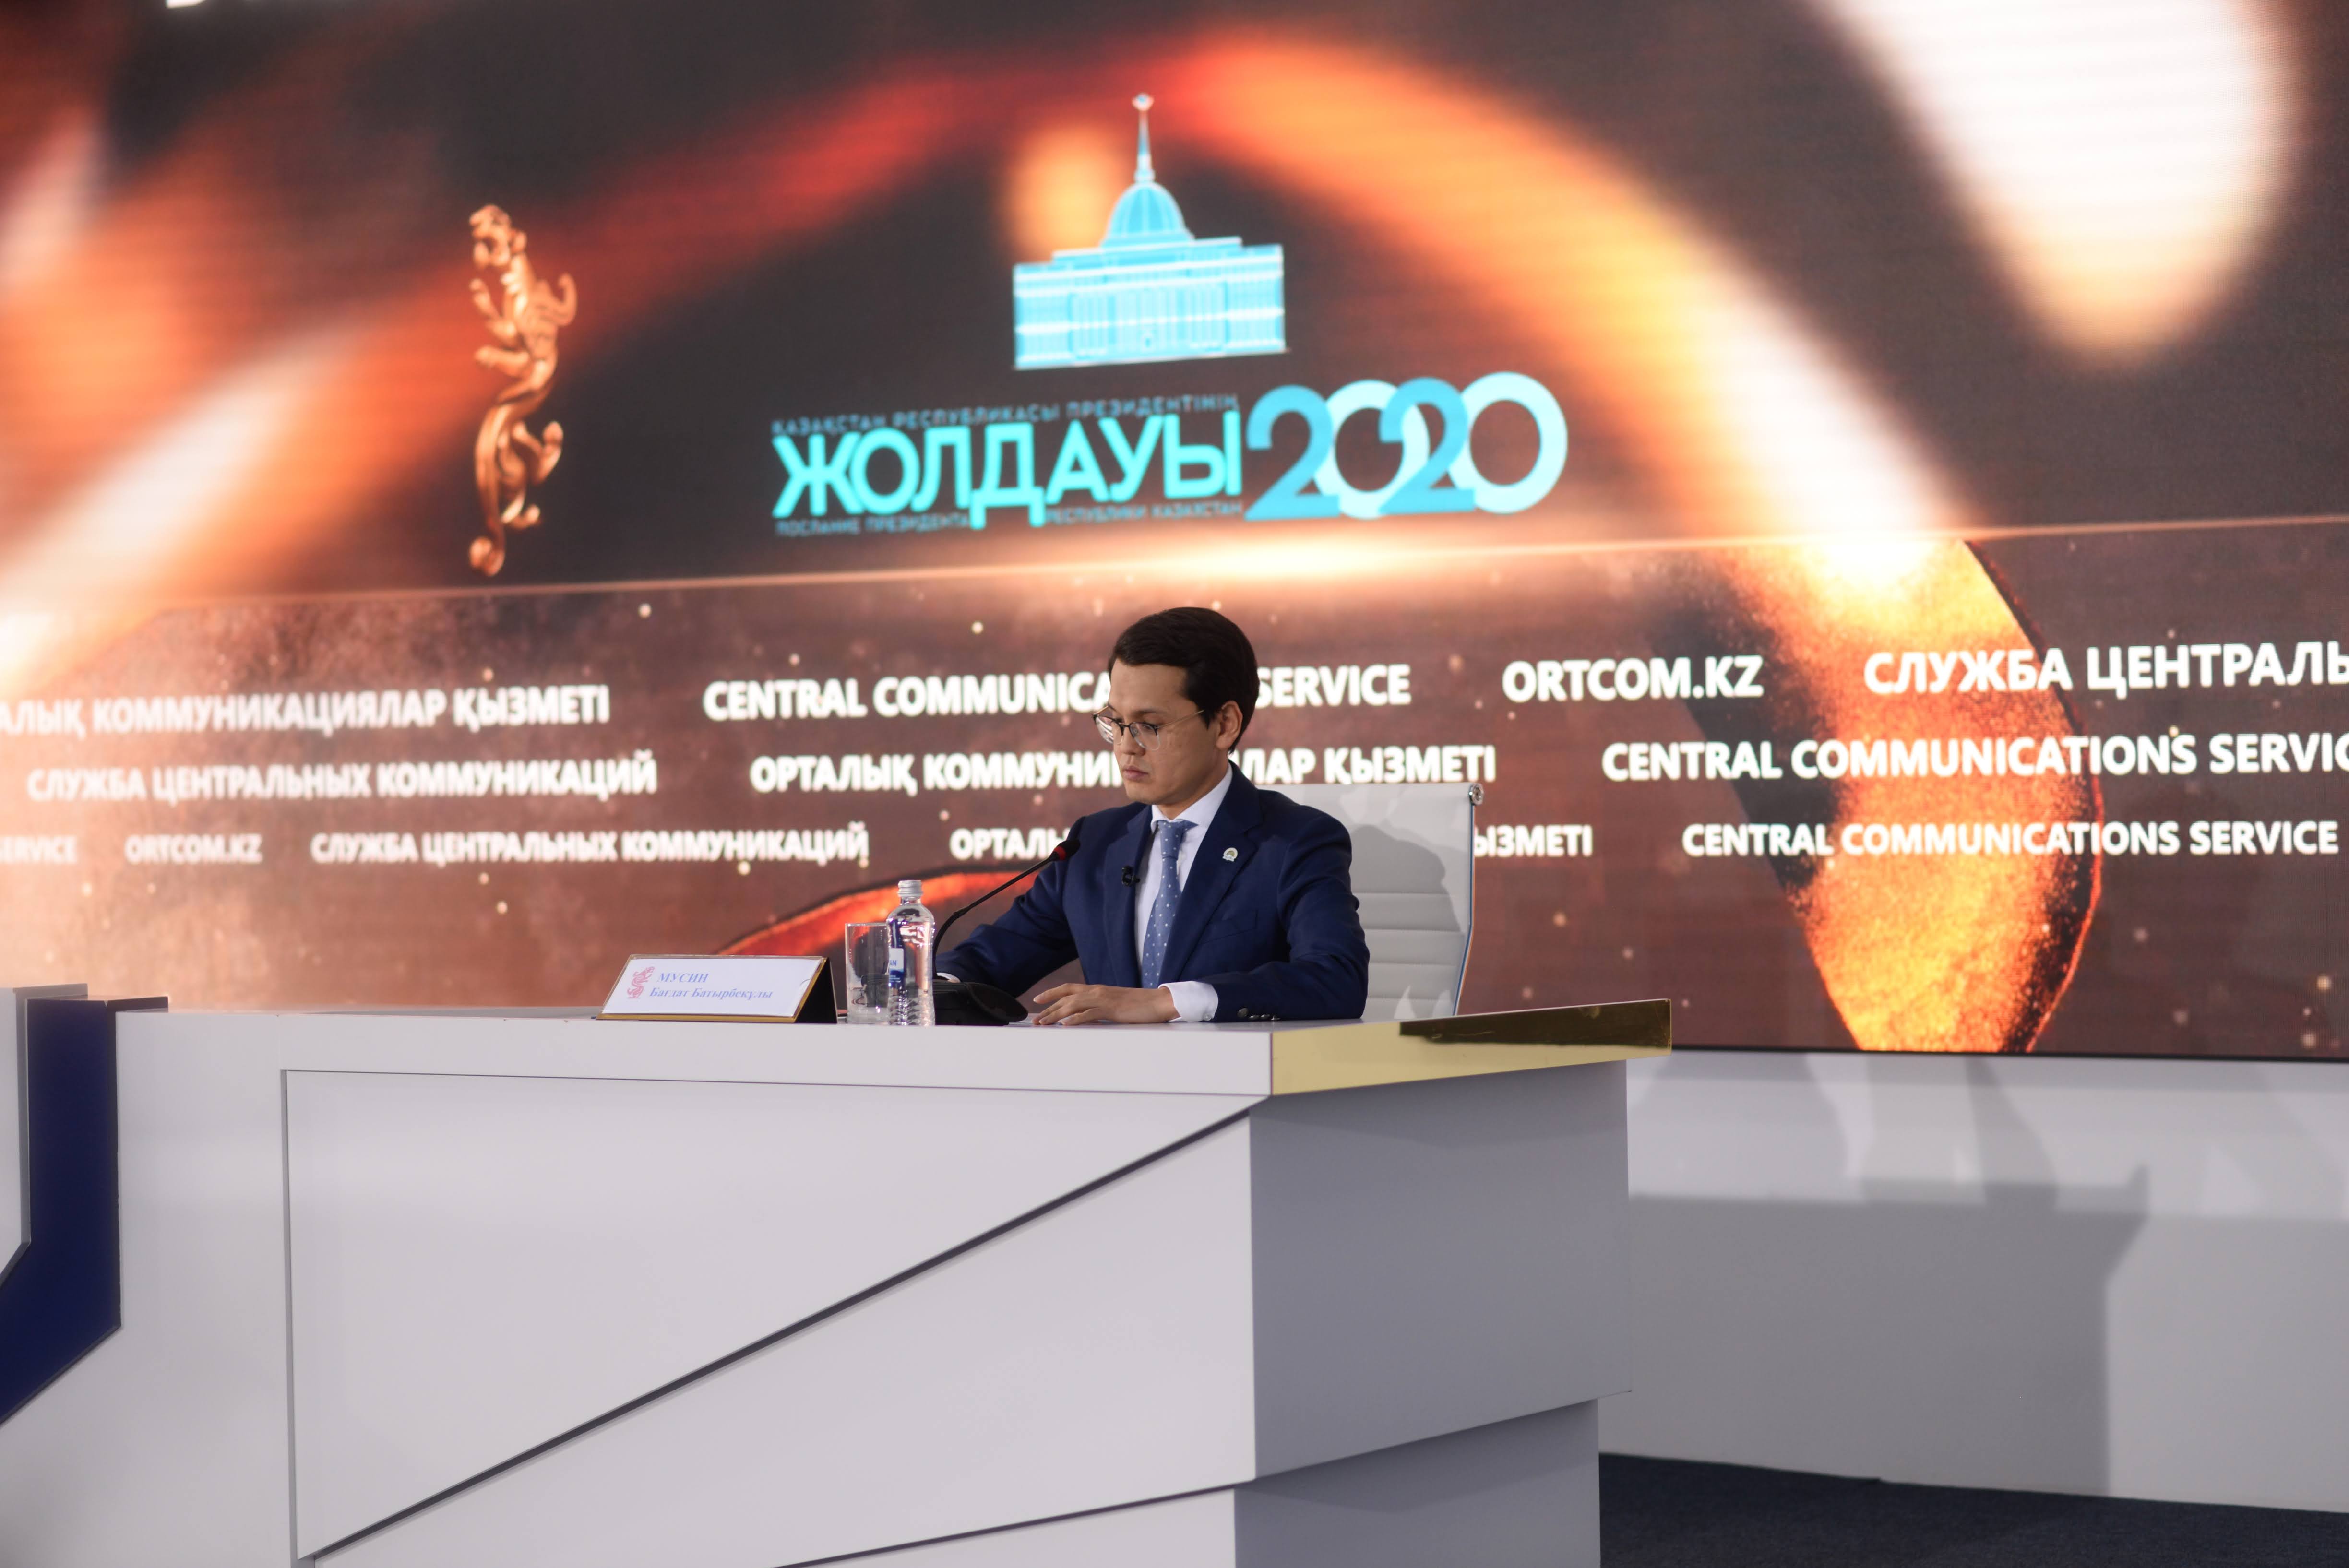 Цифровизация – базовый элемент всех реформ и новые возможности для современного Казахстана